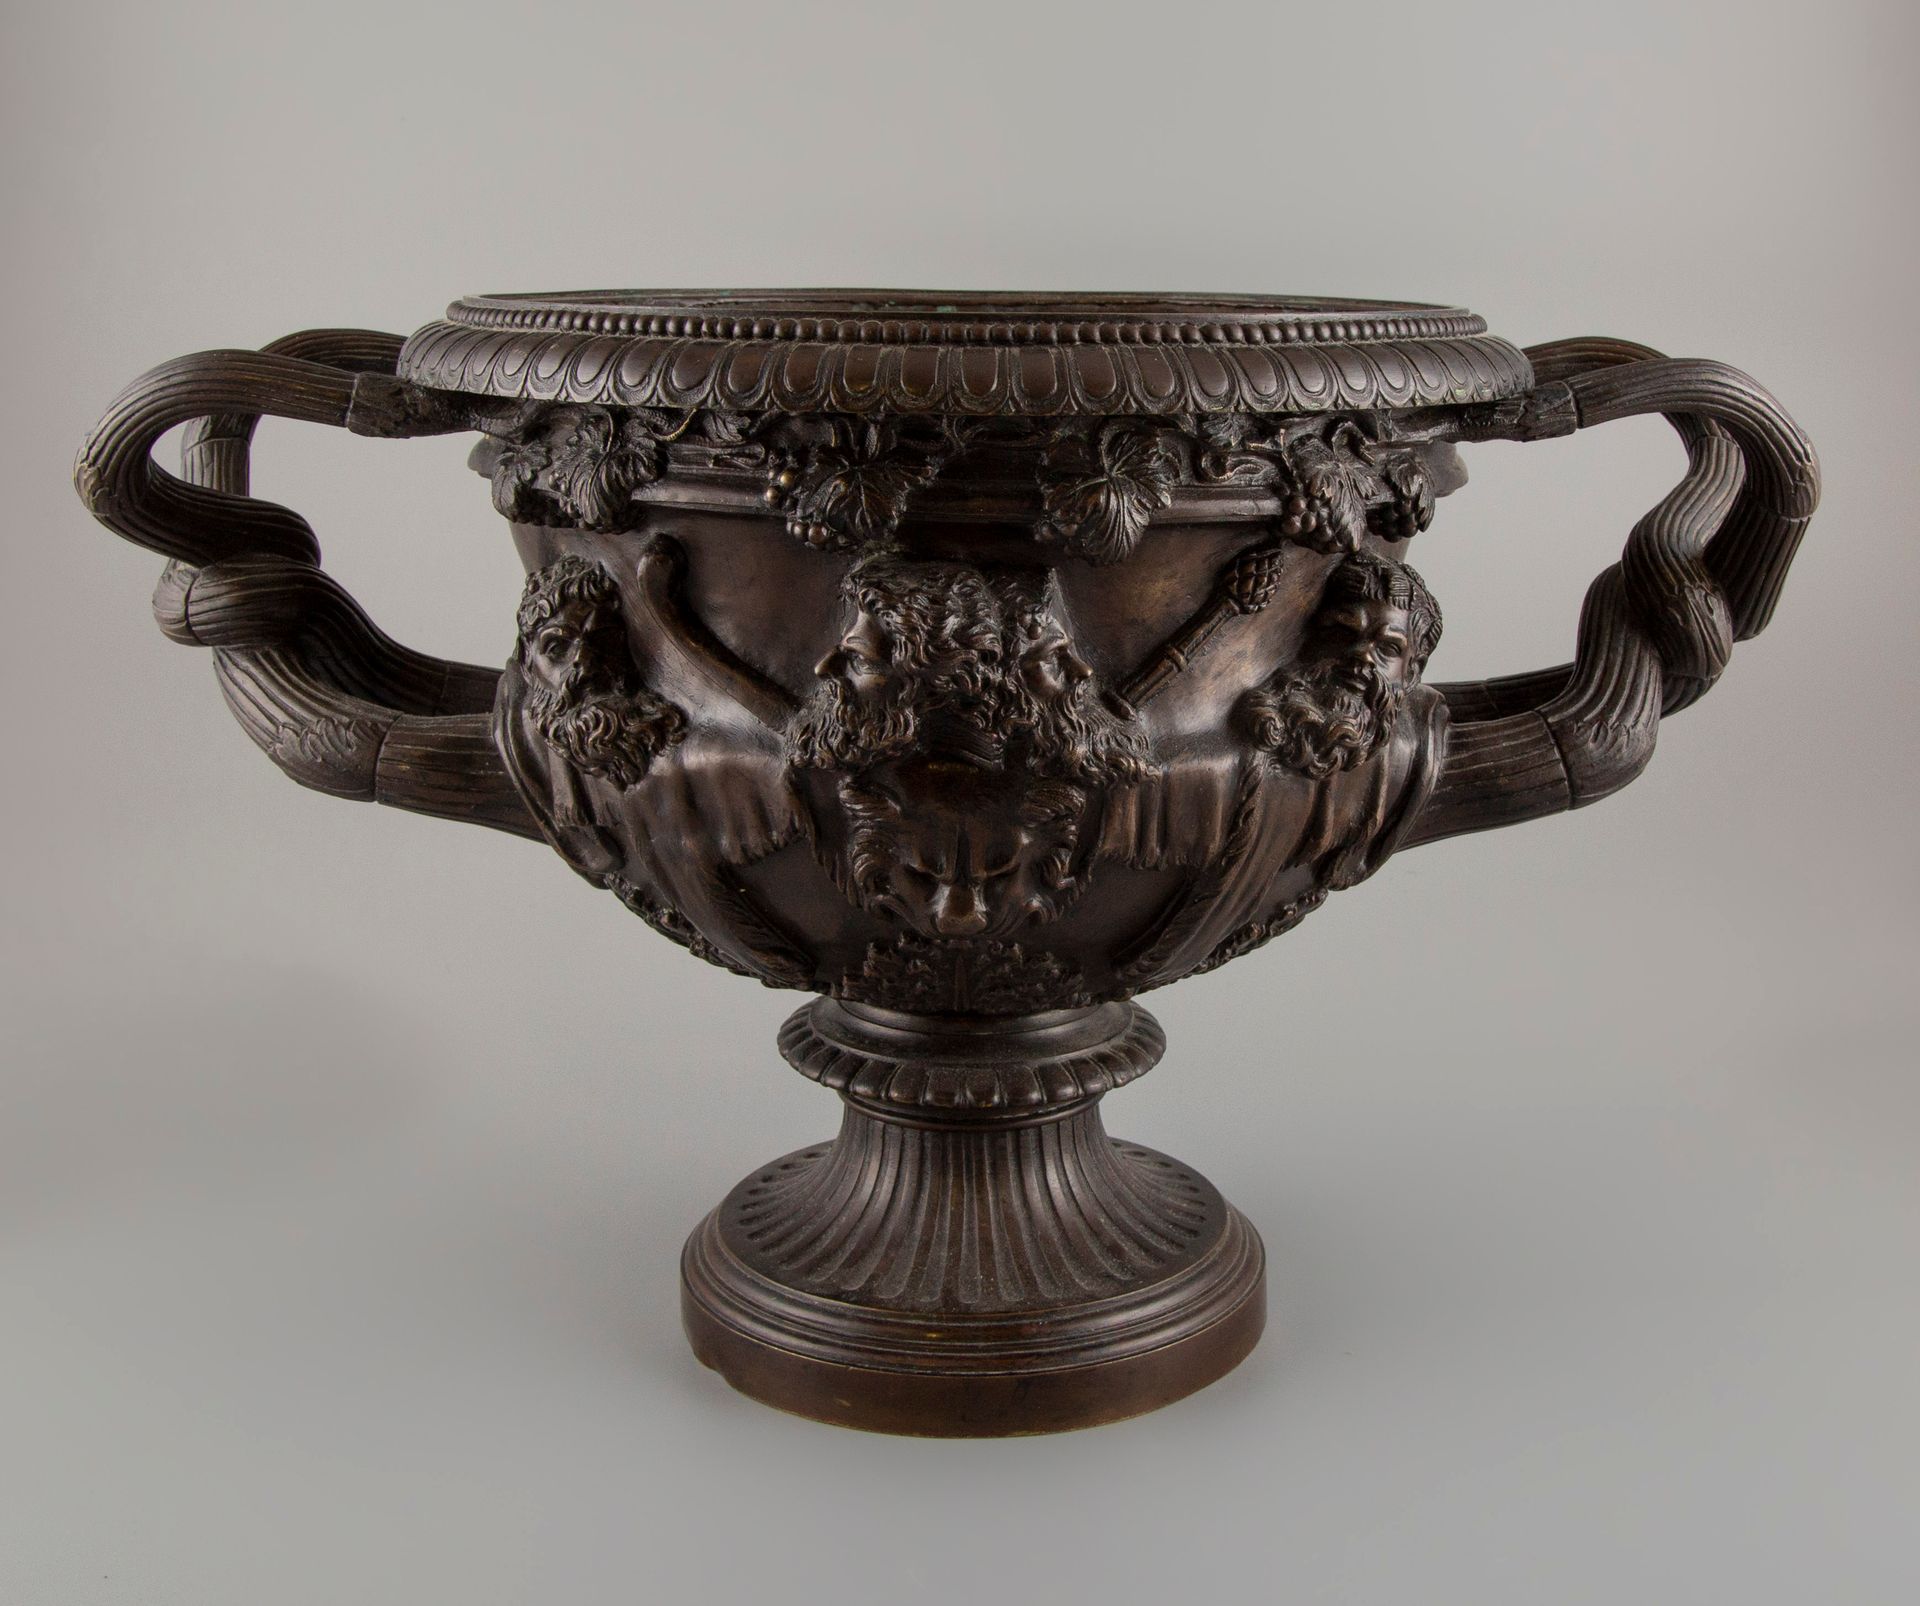 Null 一件棕色的带凹槽的青铜水壶，手柄扭曲，壶身有浮雕式的人物装饰。高：27厘米，深：28厘米